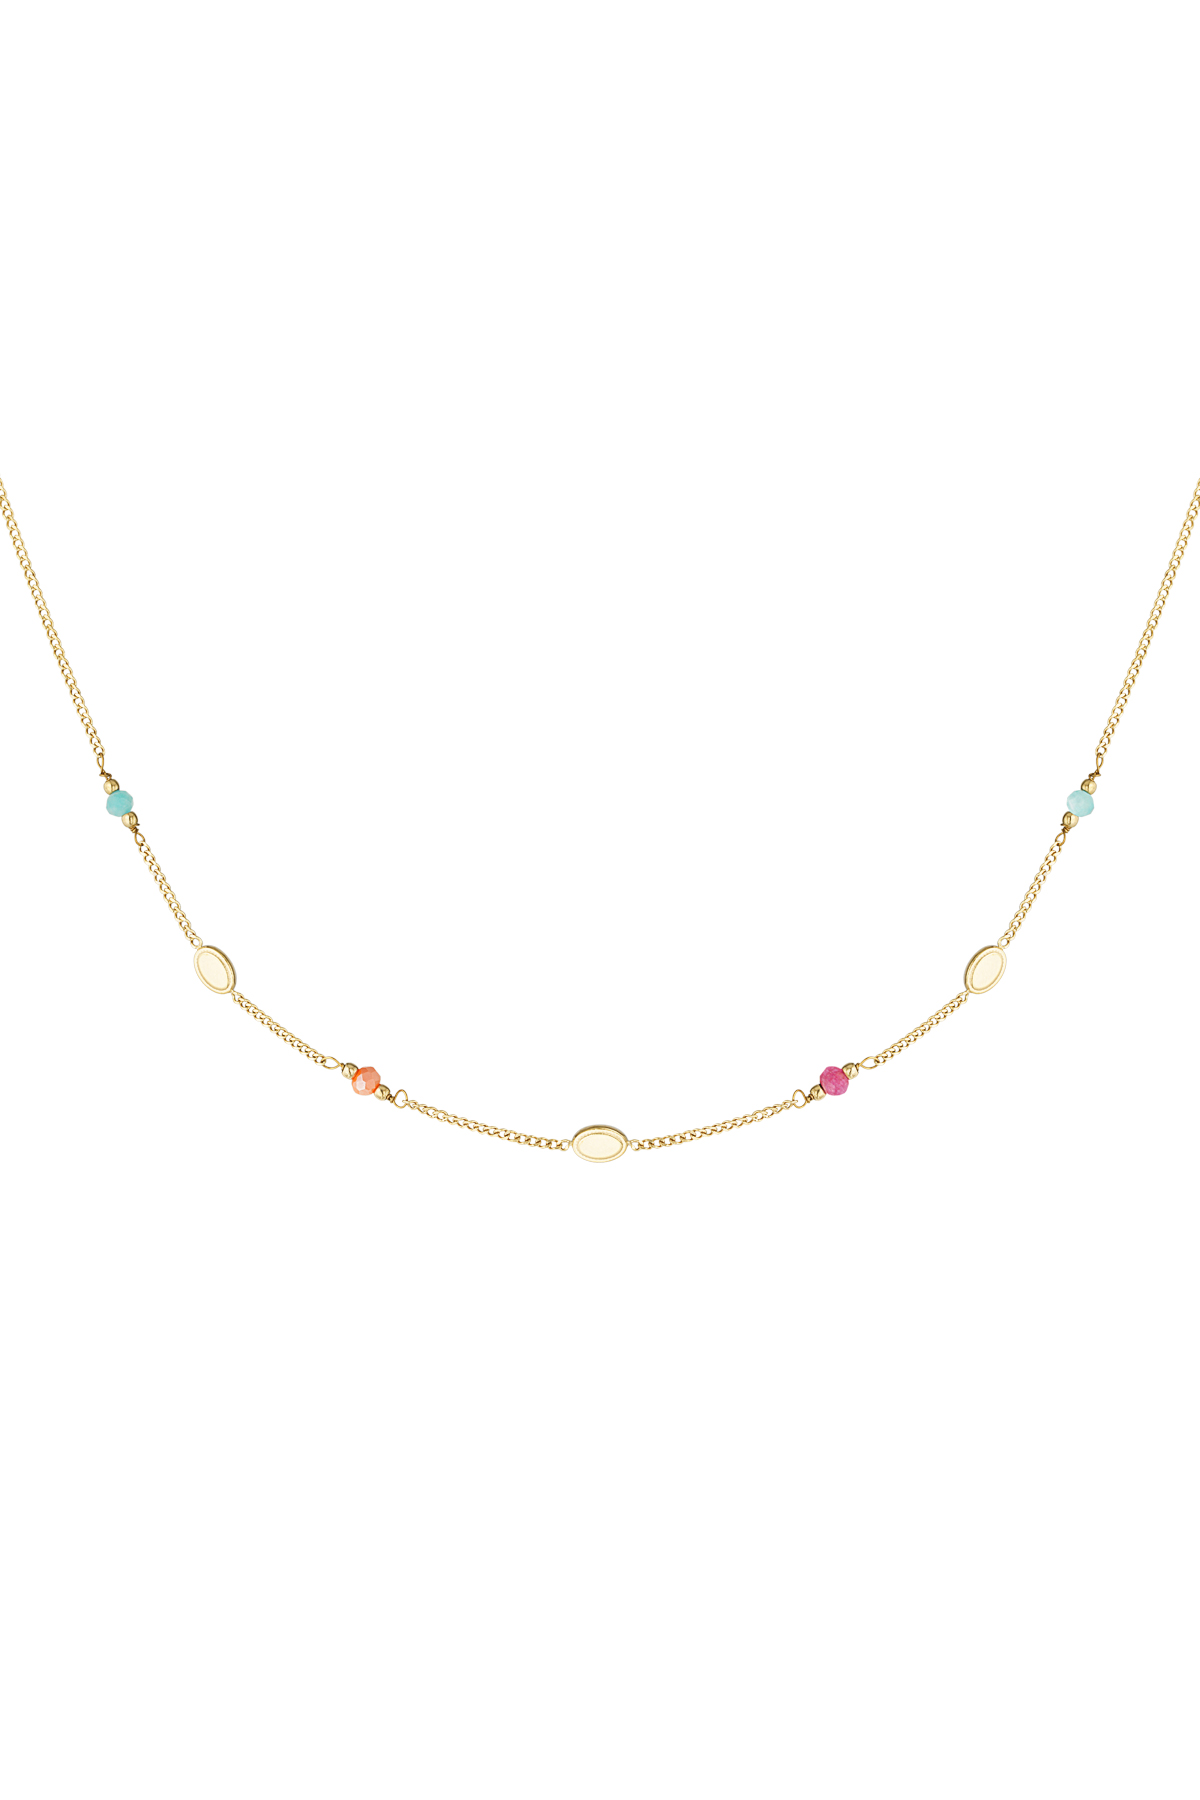 Summerlovin' necklace - gold